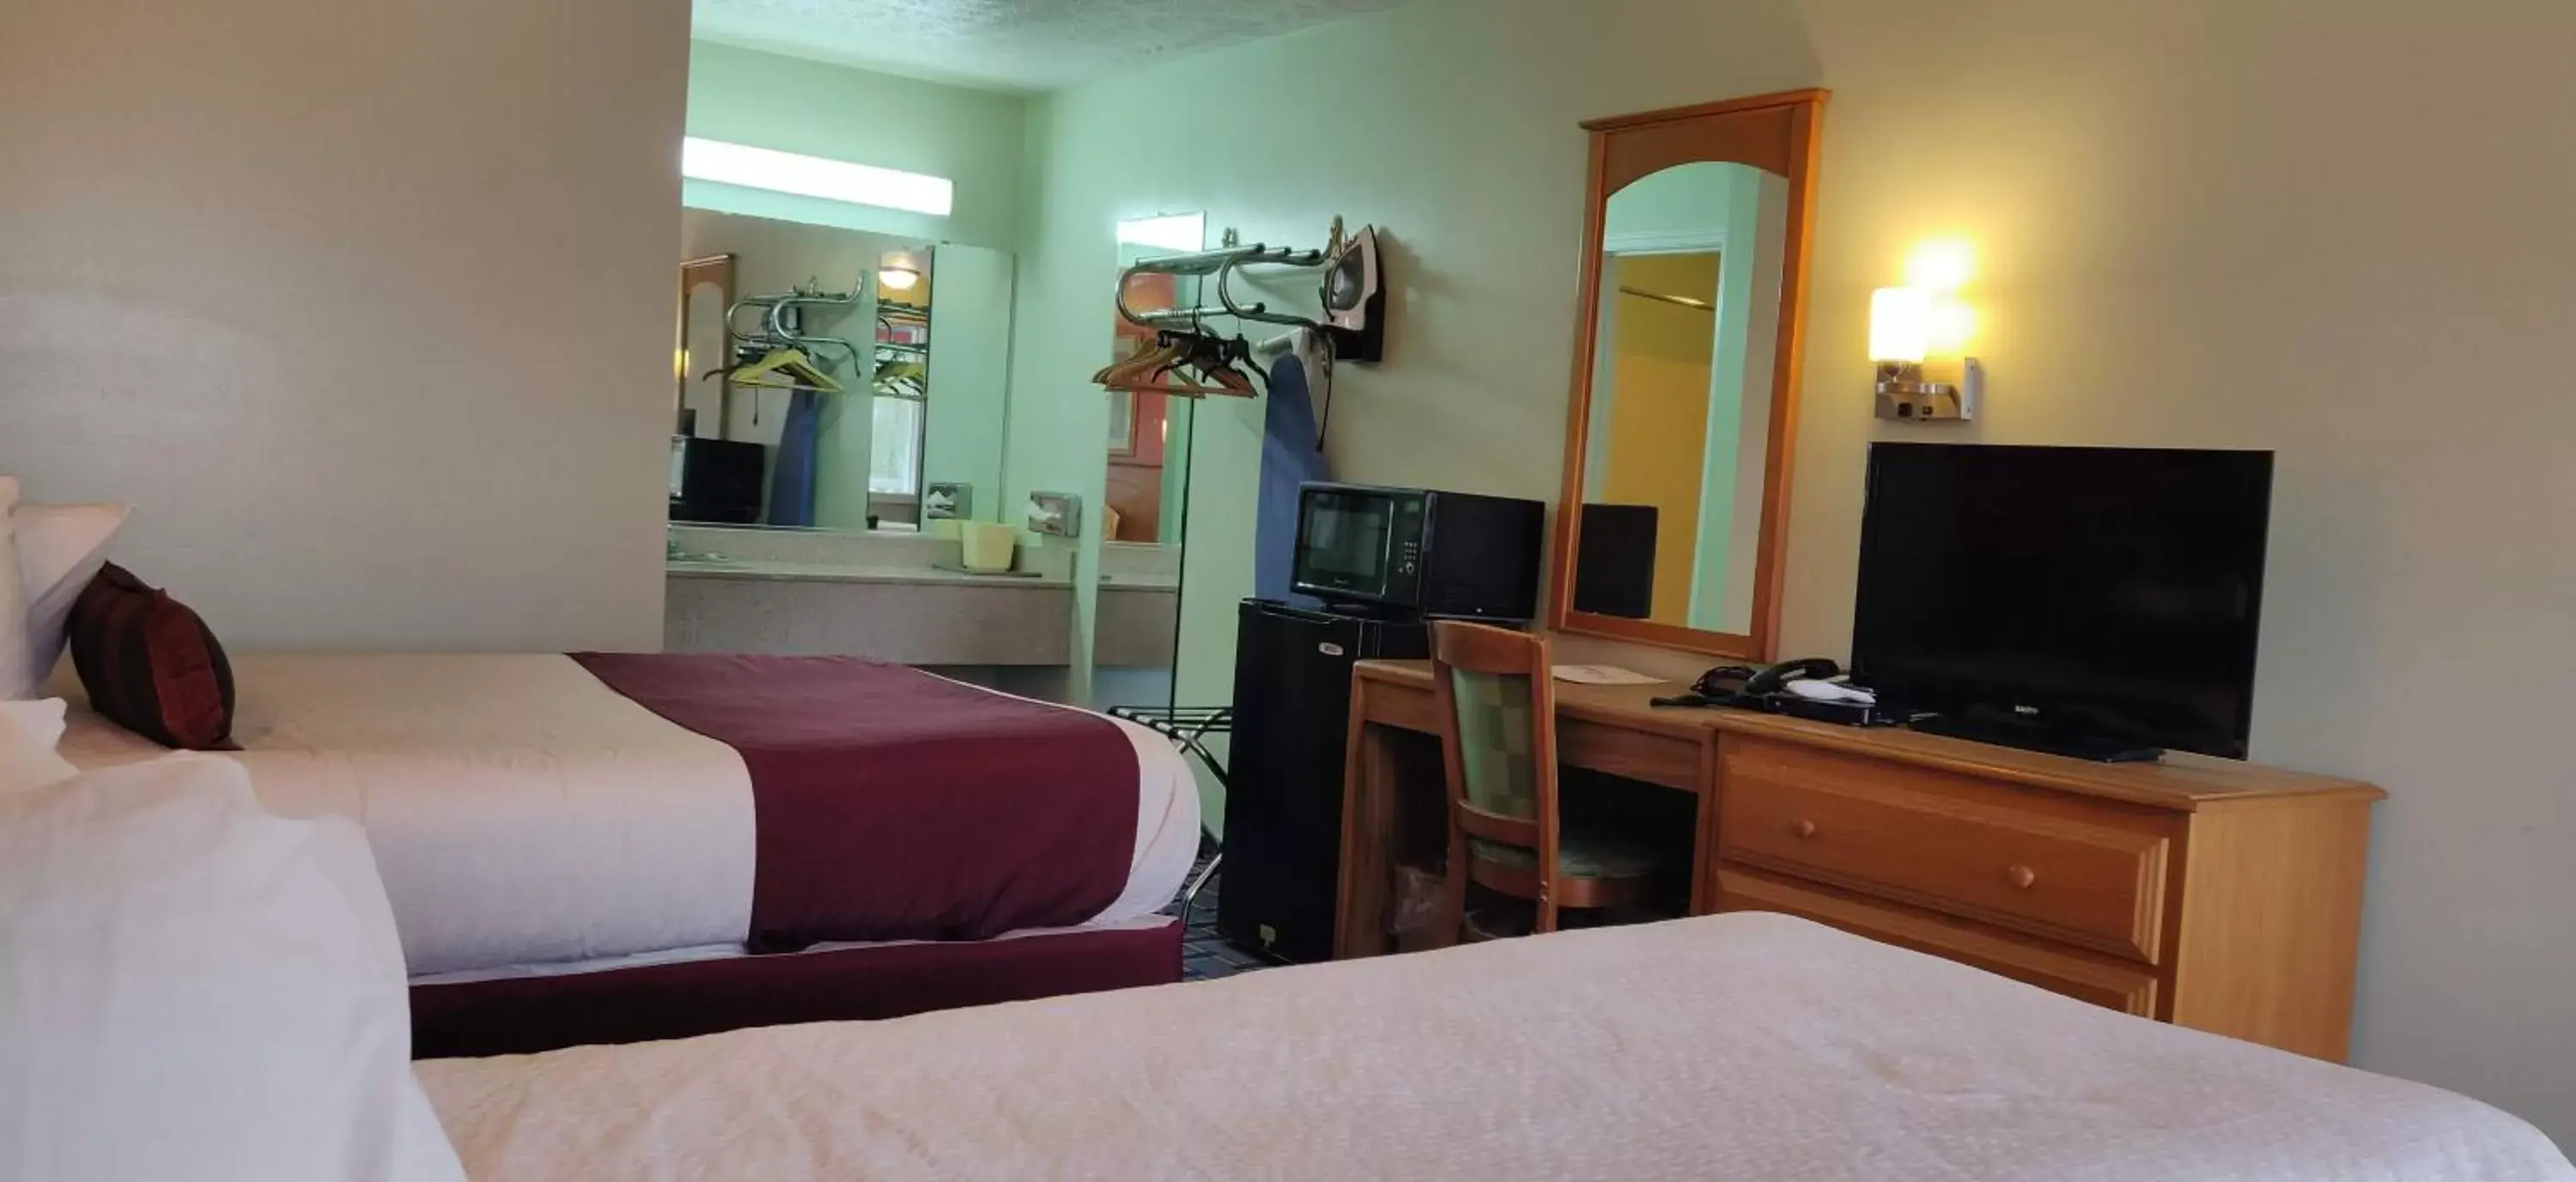 Bedroom, TV/Entertainment Center in Relax Inn